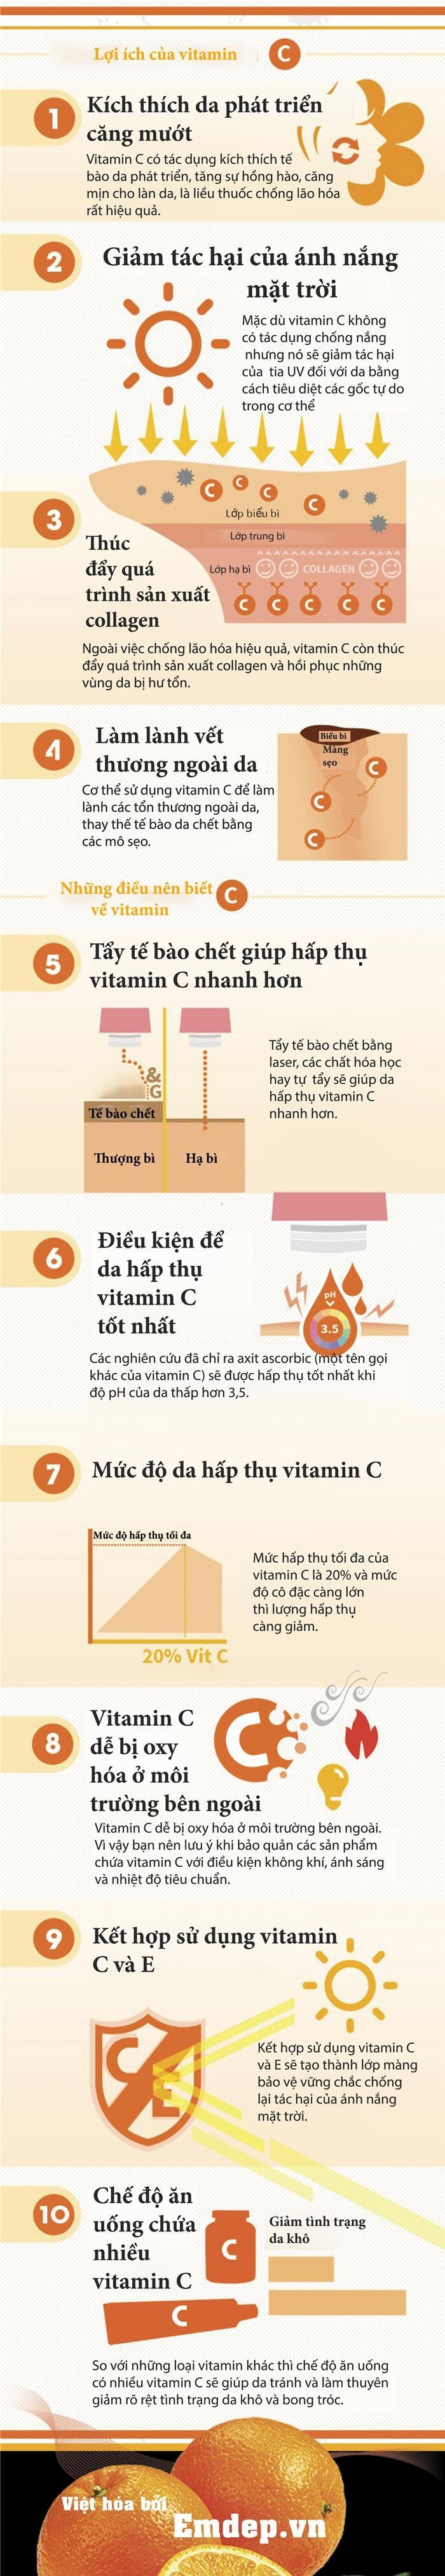 10-dieu-can-biet-khi-lam-dep-bang-vitamin-C